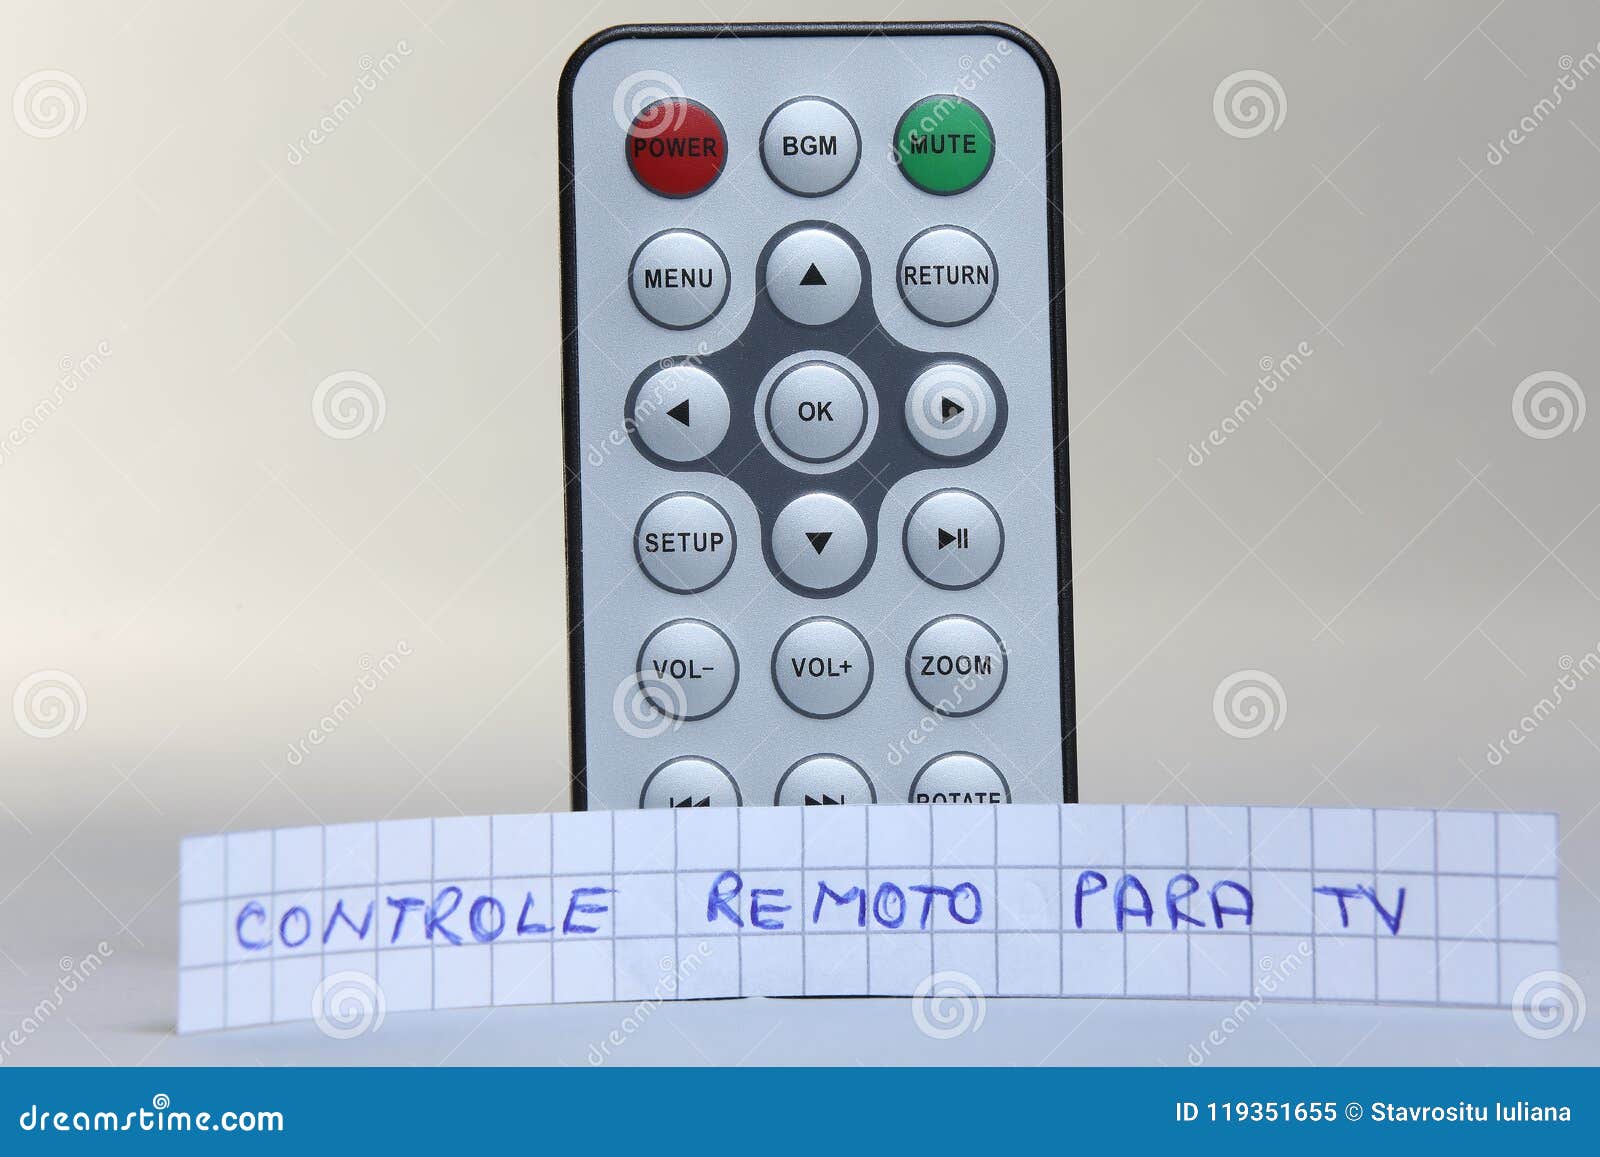 remote control in english and controle remoto para tv in portuguese language